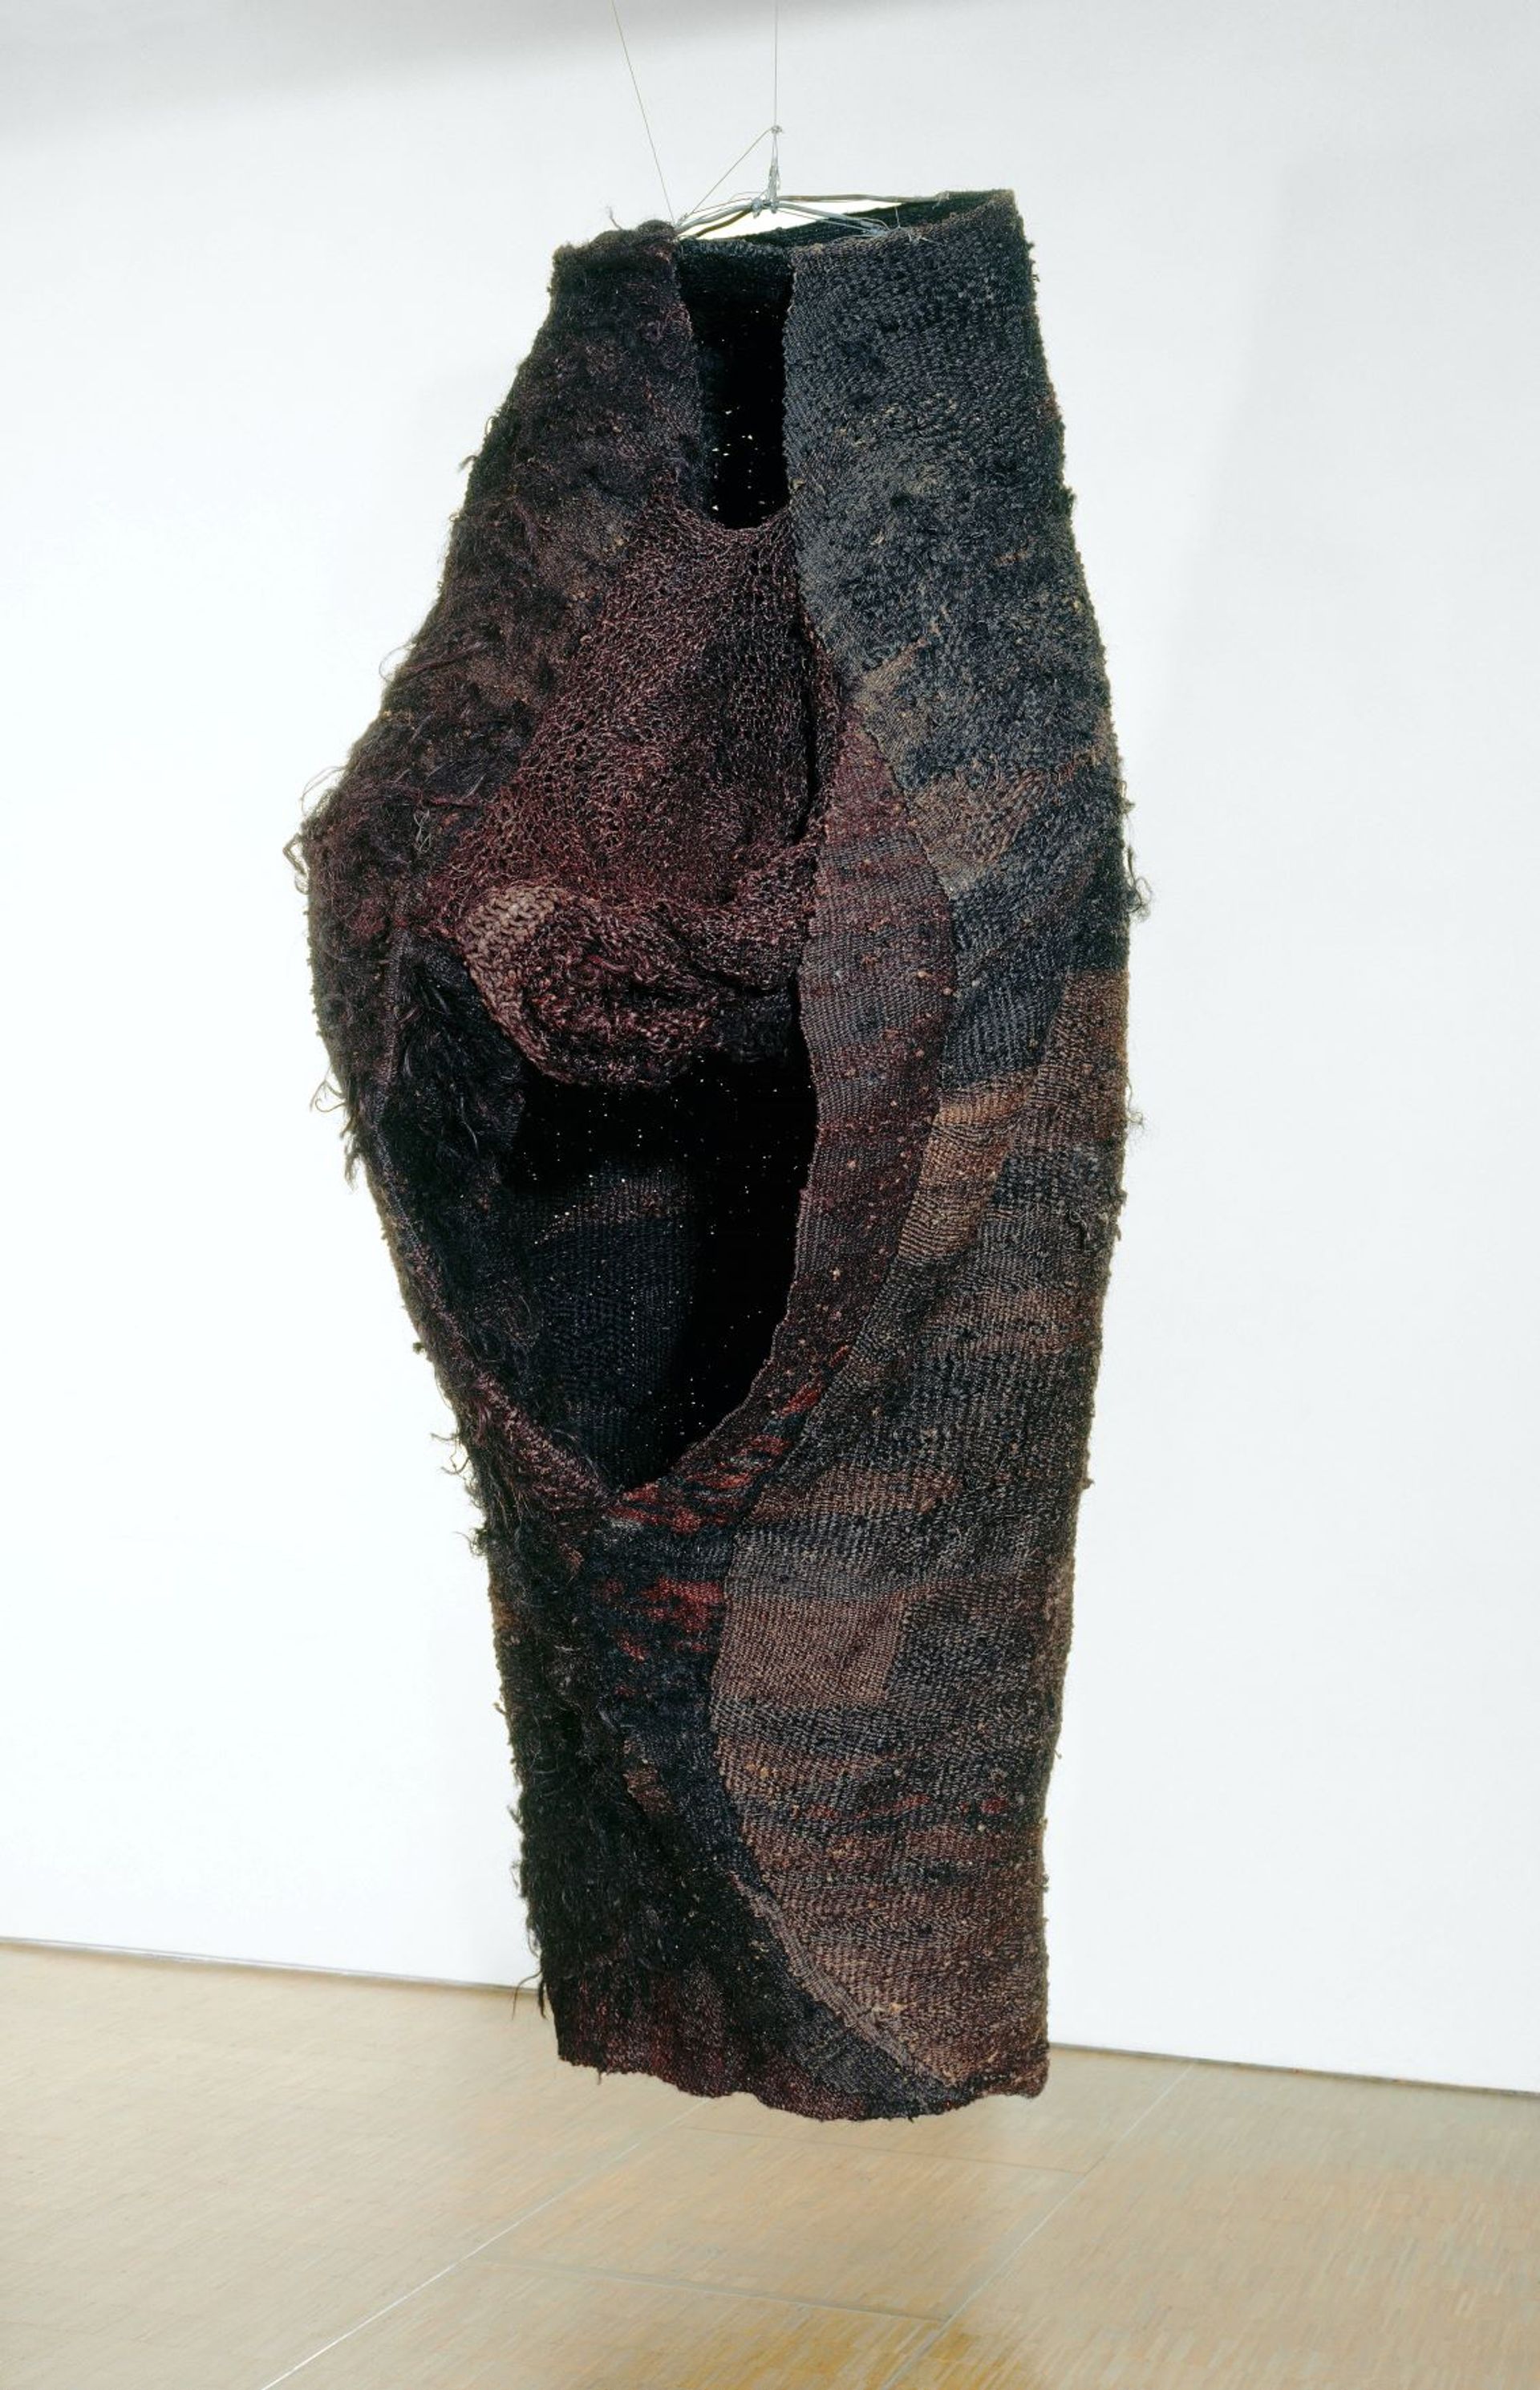 Magdalena Abakanowicz, Abakan grand noir, 1967-1968, sisal et chanvre tissés et cousus, Centre Pompidou, Musée national d’art moderne, Paris, achat, 1979. D.R.